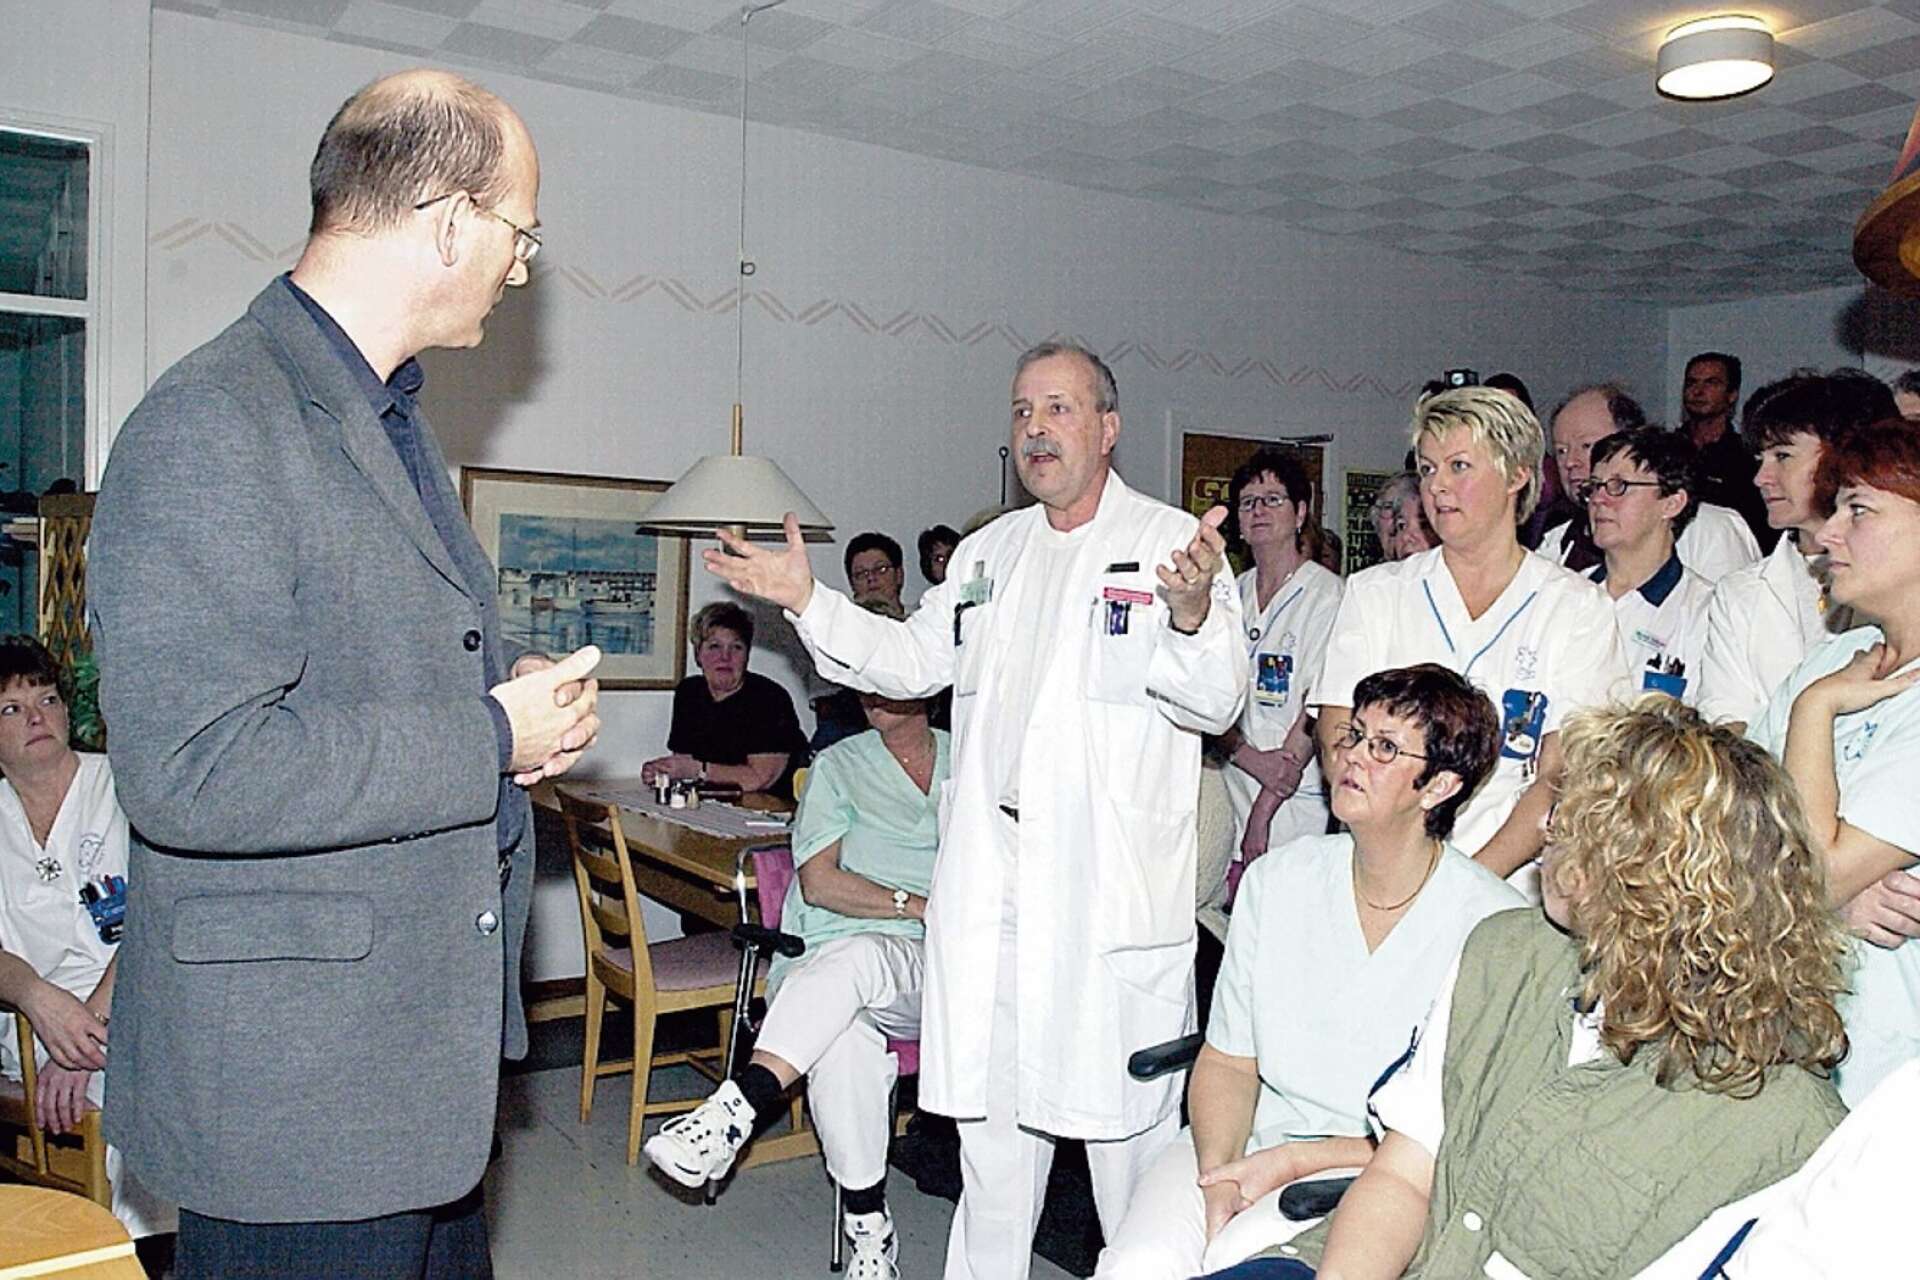 Bland de hårdaste kritikerna mot nedläggningsförslaget fanns många av sjukhusets läkare. En av dem var Bernhard Jaup, som på bilden ses reagera mot ett besked som lämnats till personalen. 